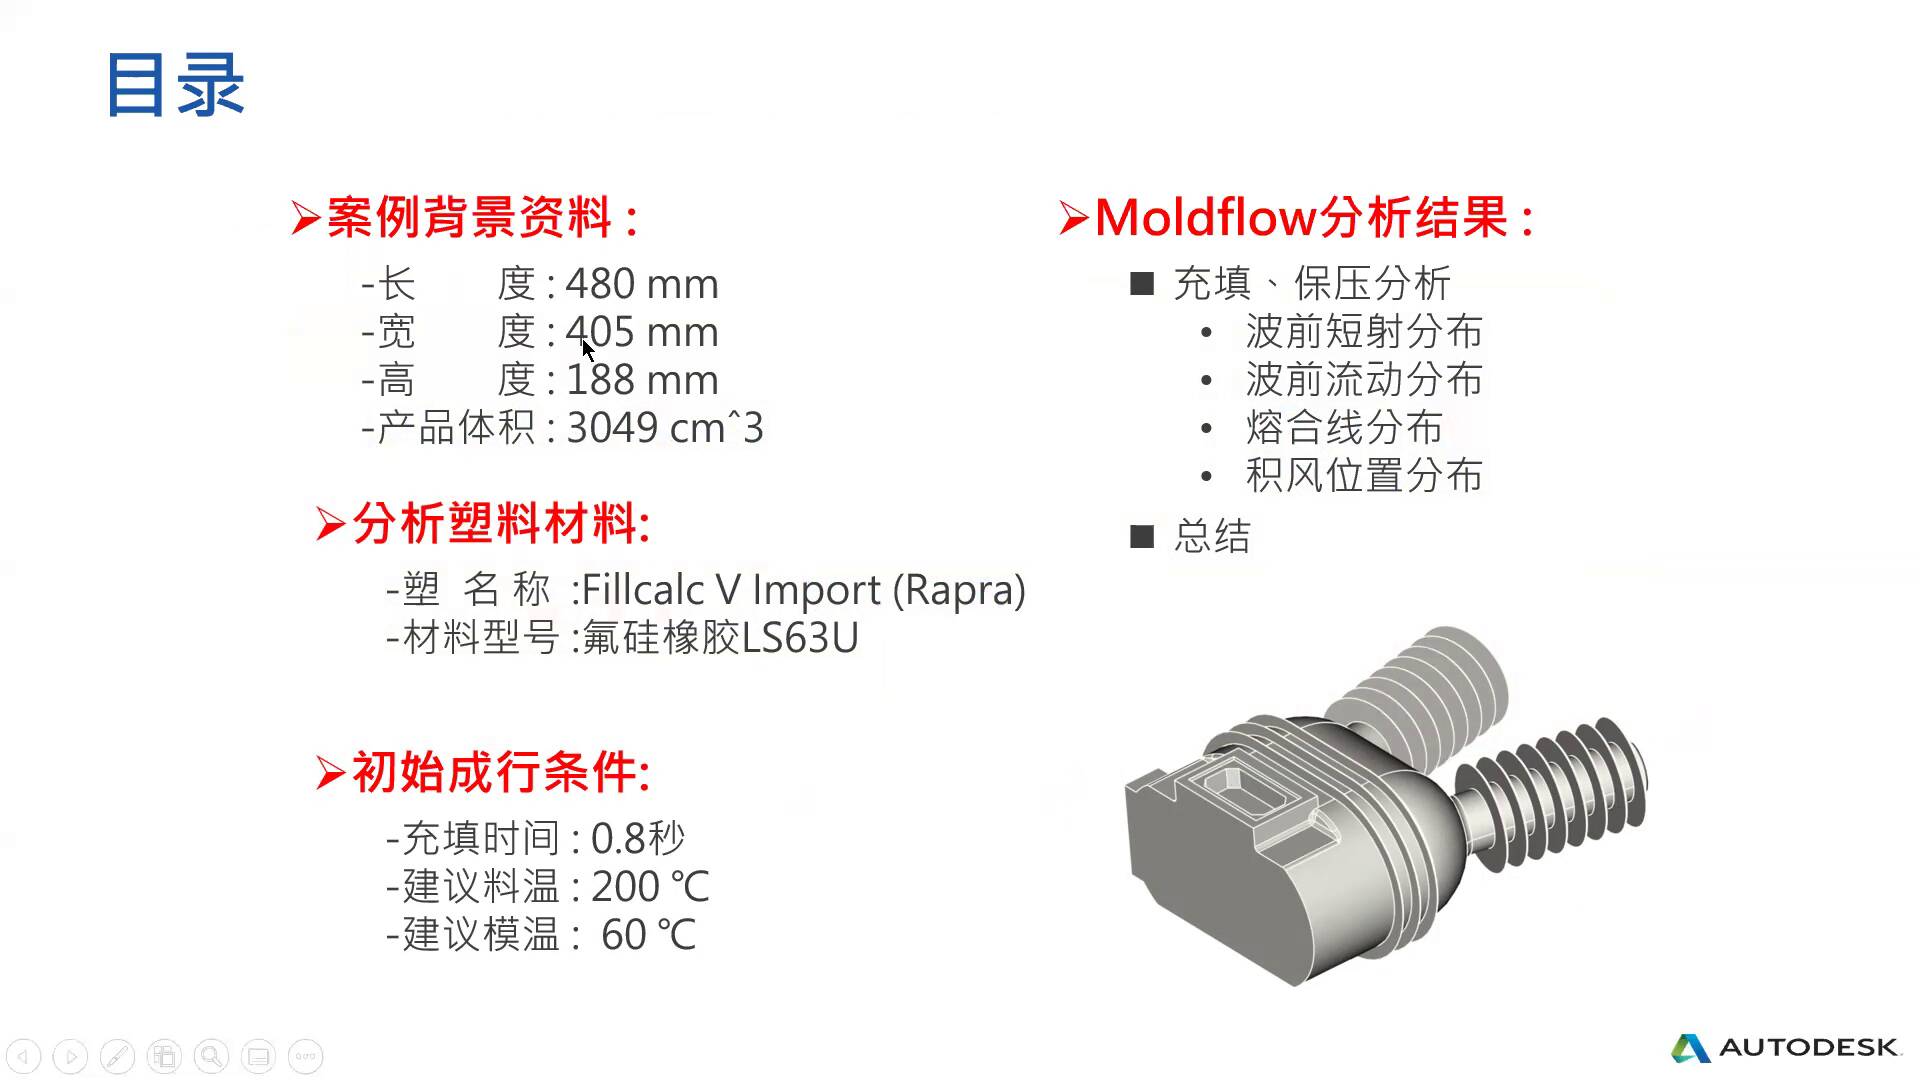 Moldflow在液態矽膠(LSR)模具的開發與設計應用